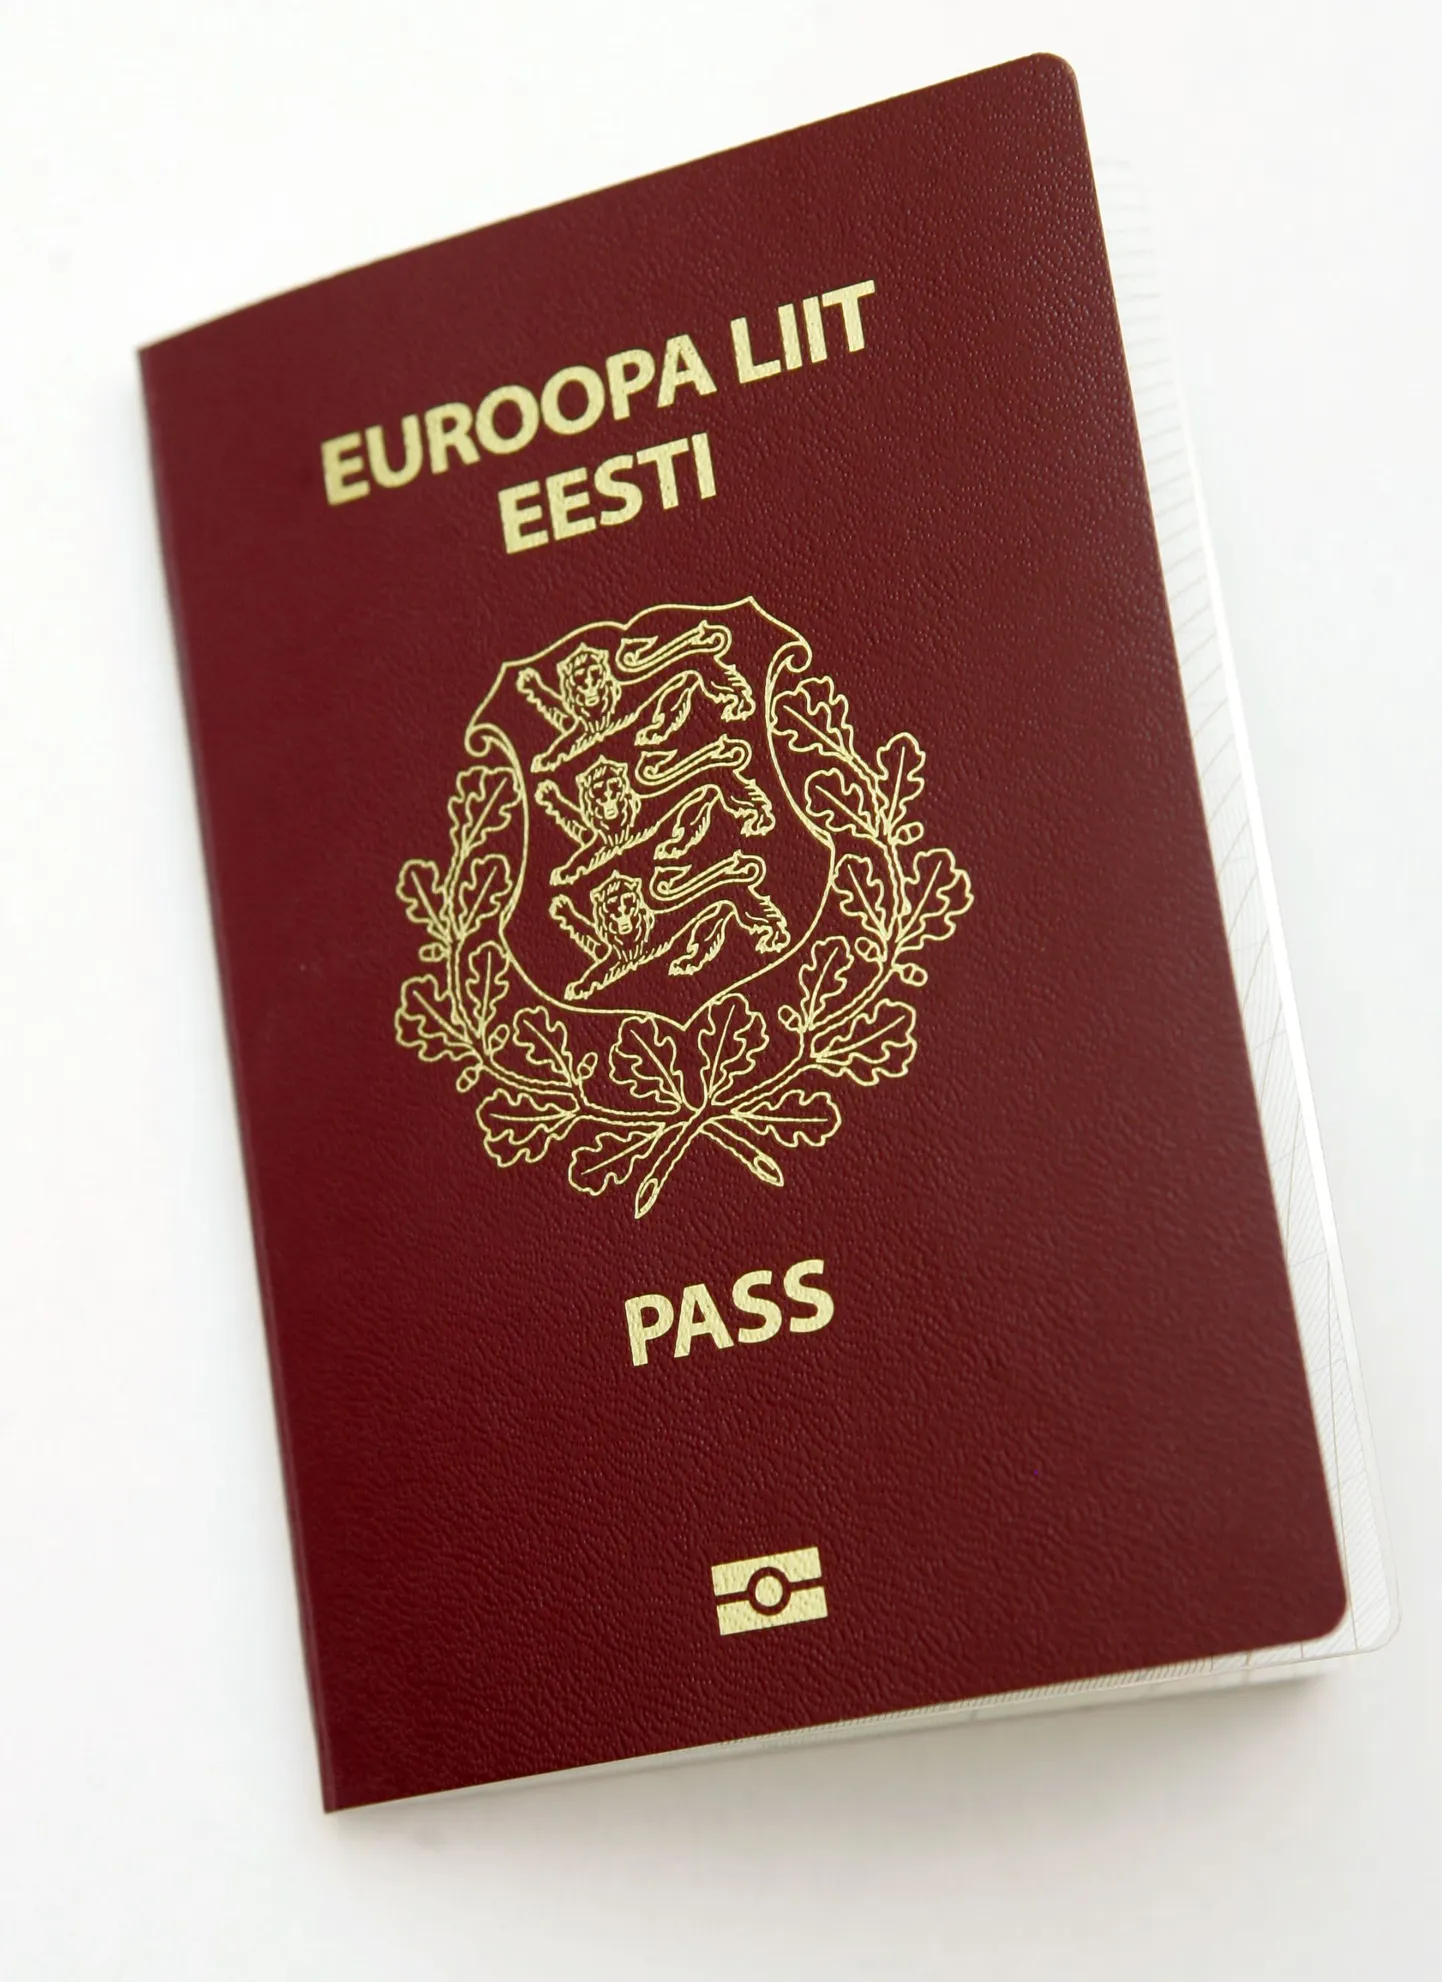 Eesti passi saamise kord võib veelgi lihtsustada.